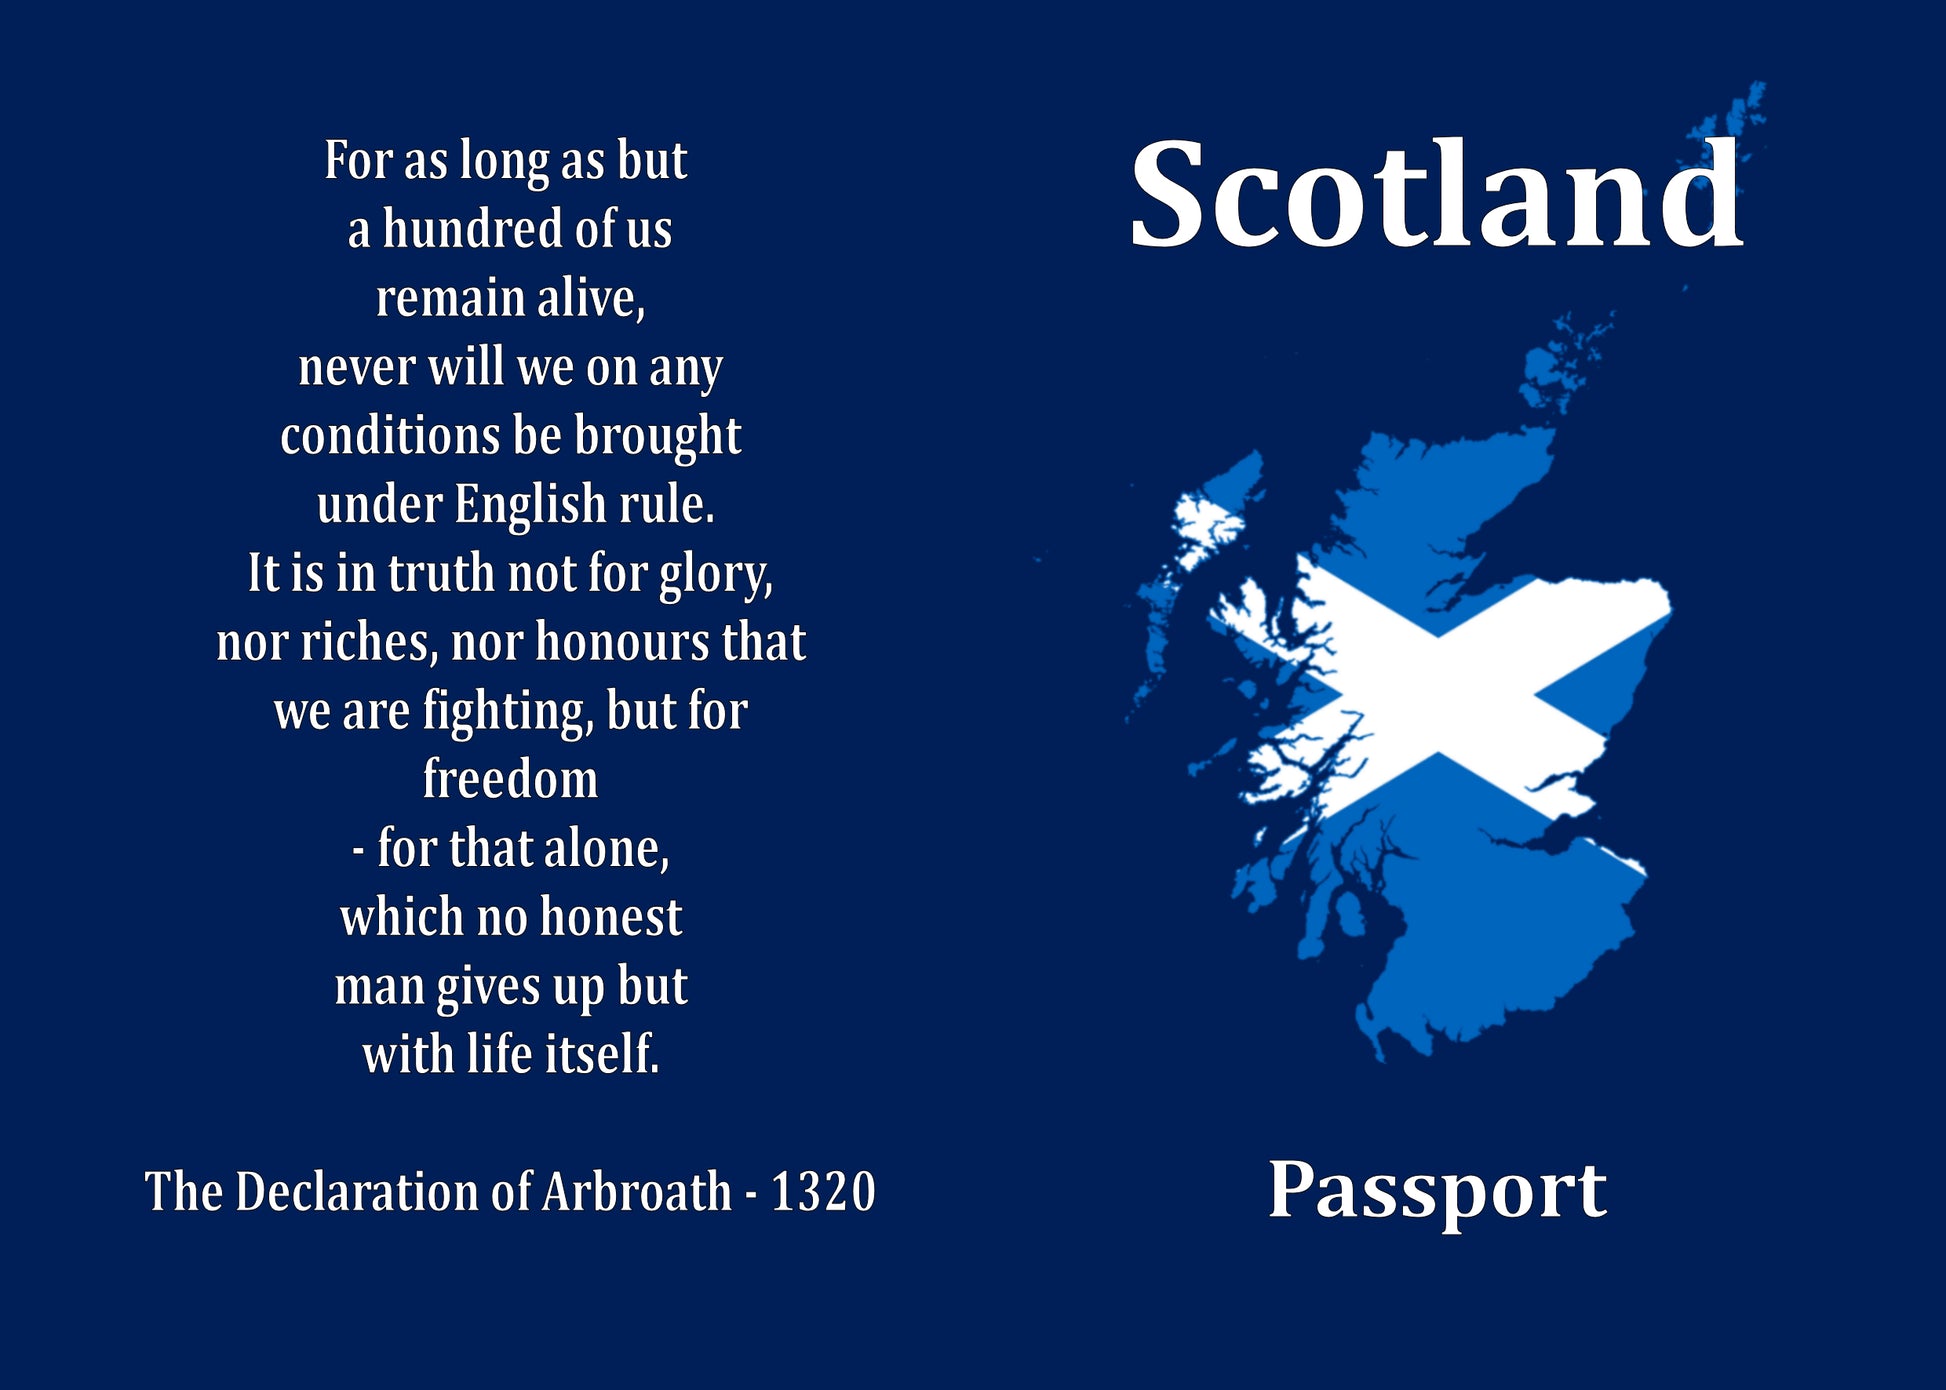 Scottish Passport cover